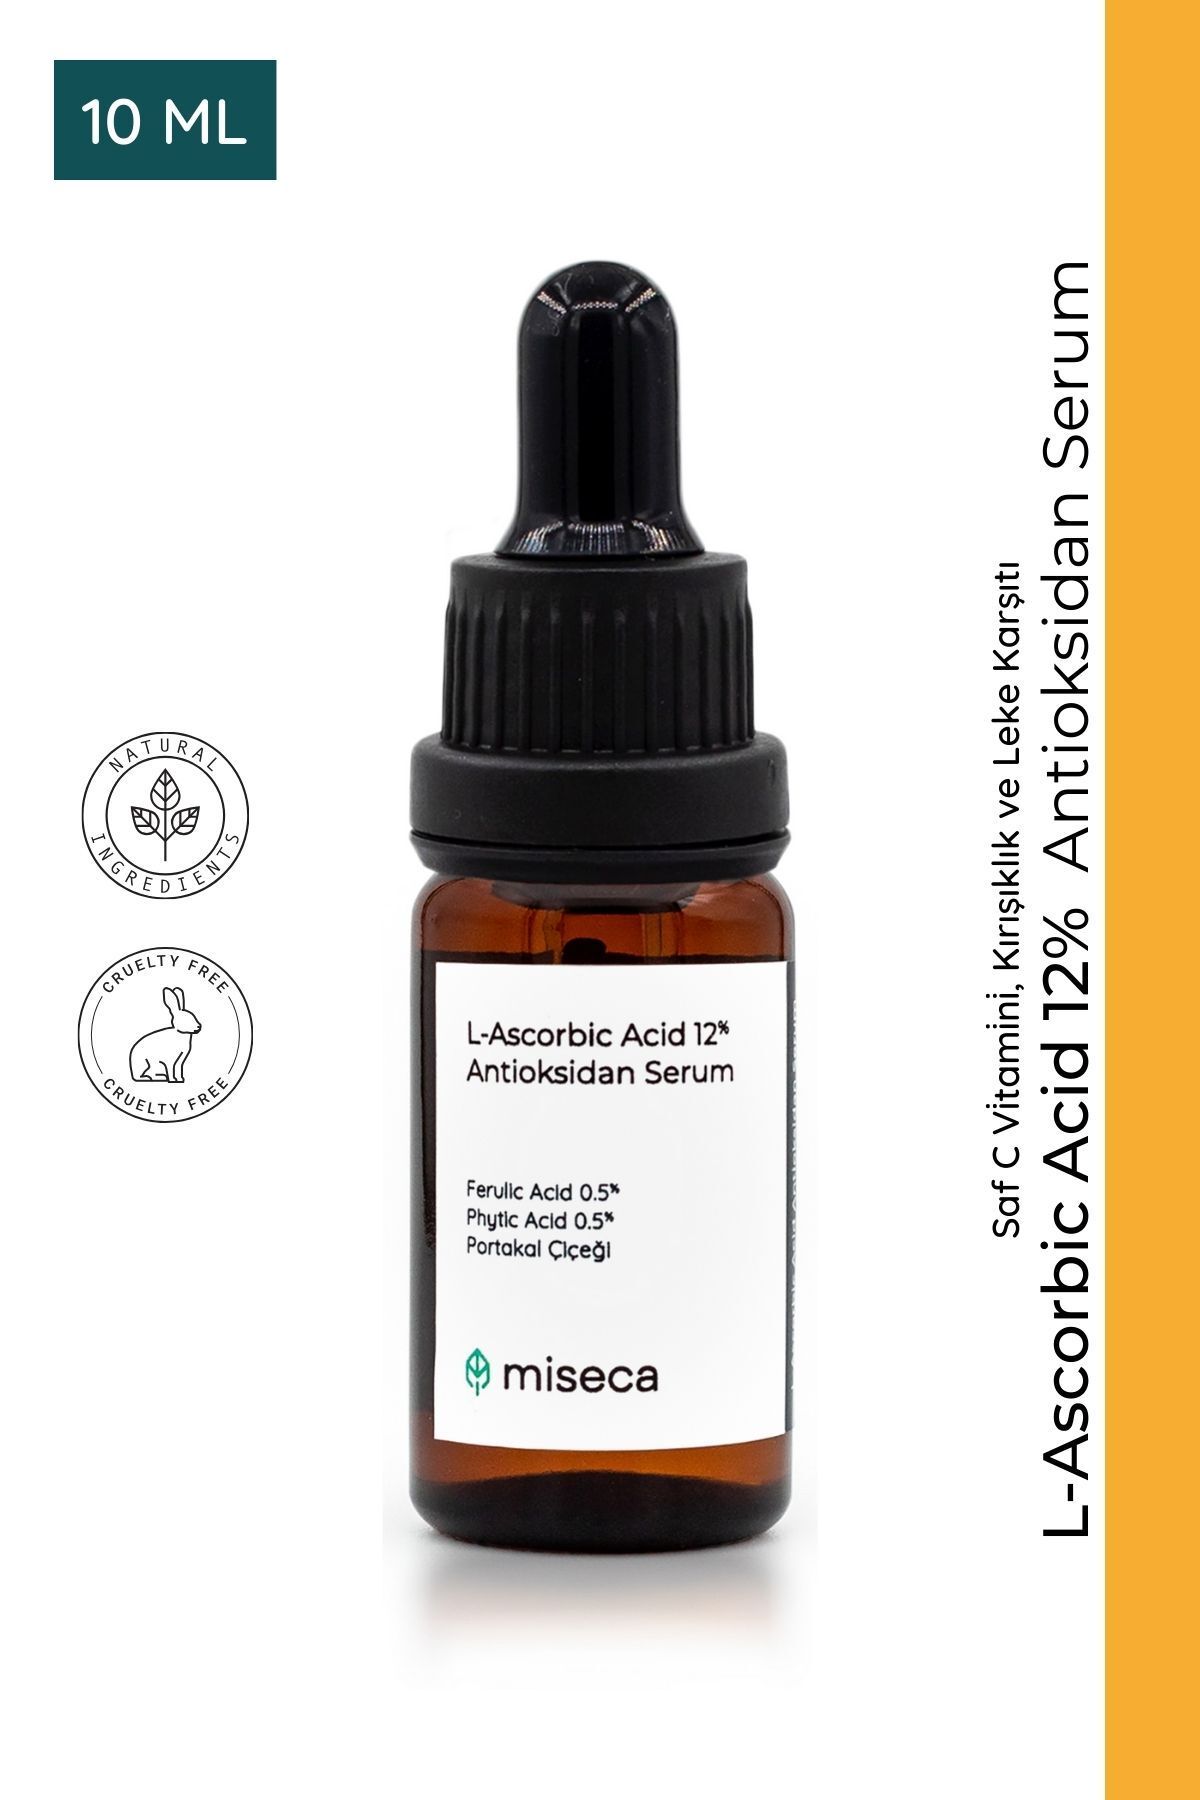 miseca L-ascorbic Acid 12% Antioksidan Serum 10 ml Aydınlatıcı Ve Kırışıklık Karşıtı Saf C Vitamini